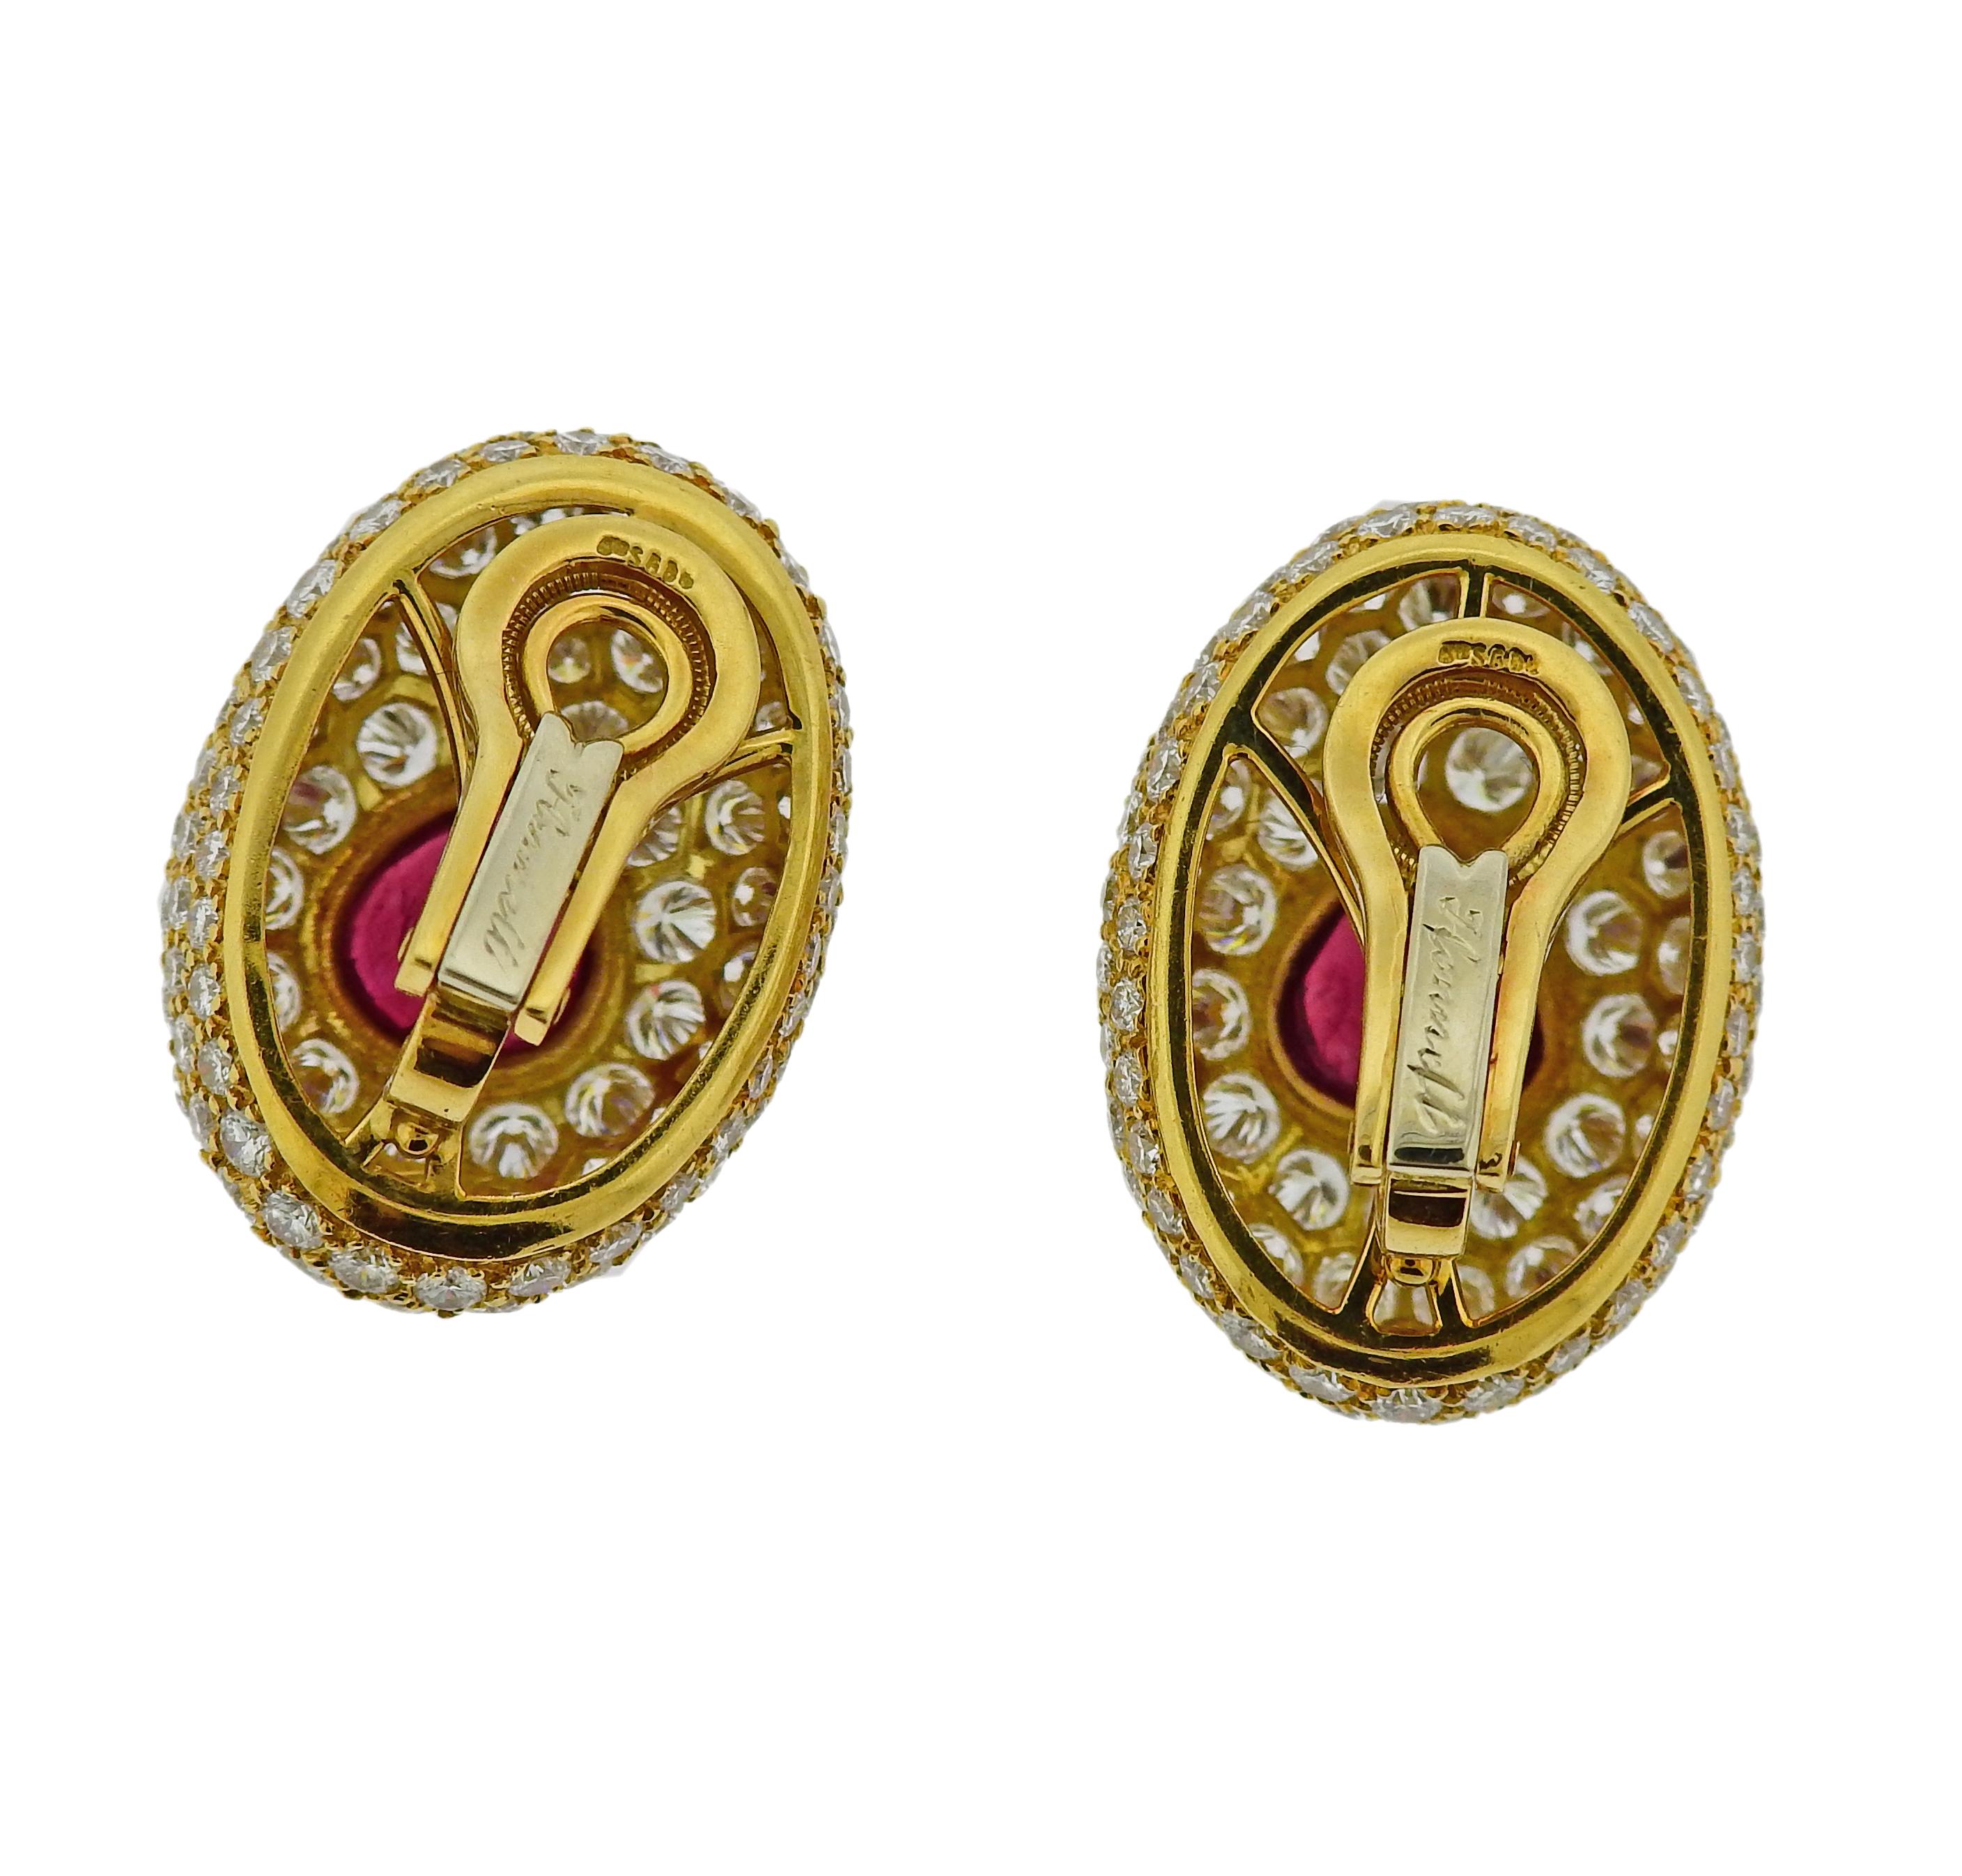 15 carat gold earrings